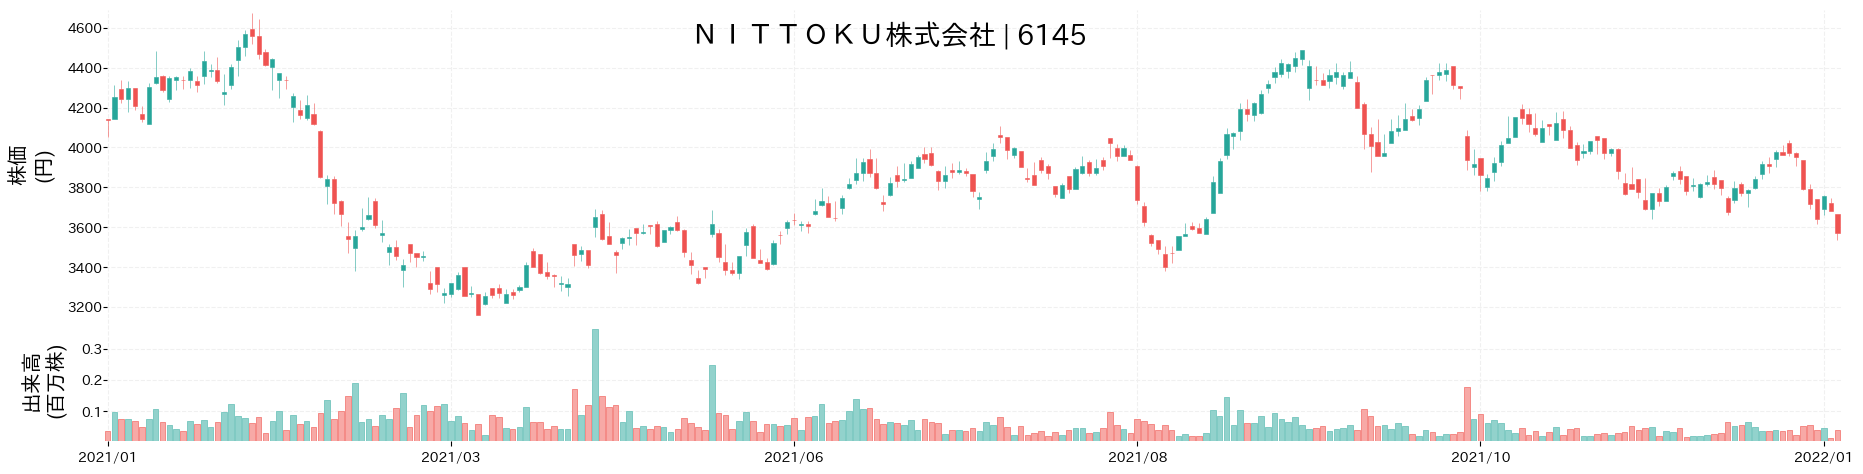 NITTOKUの株価推移(2021)